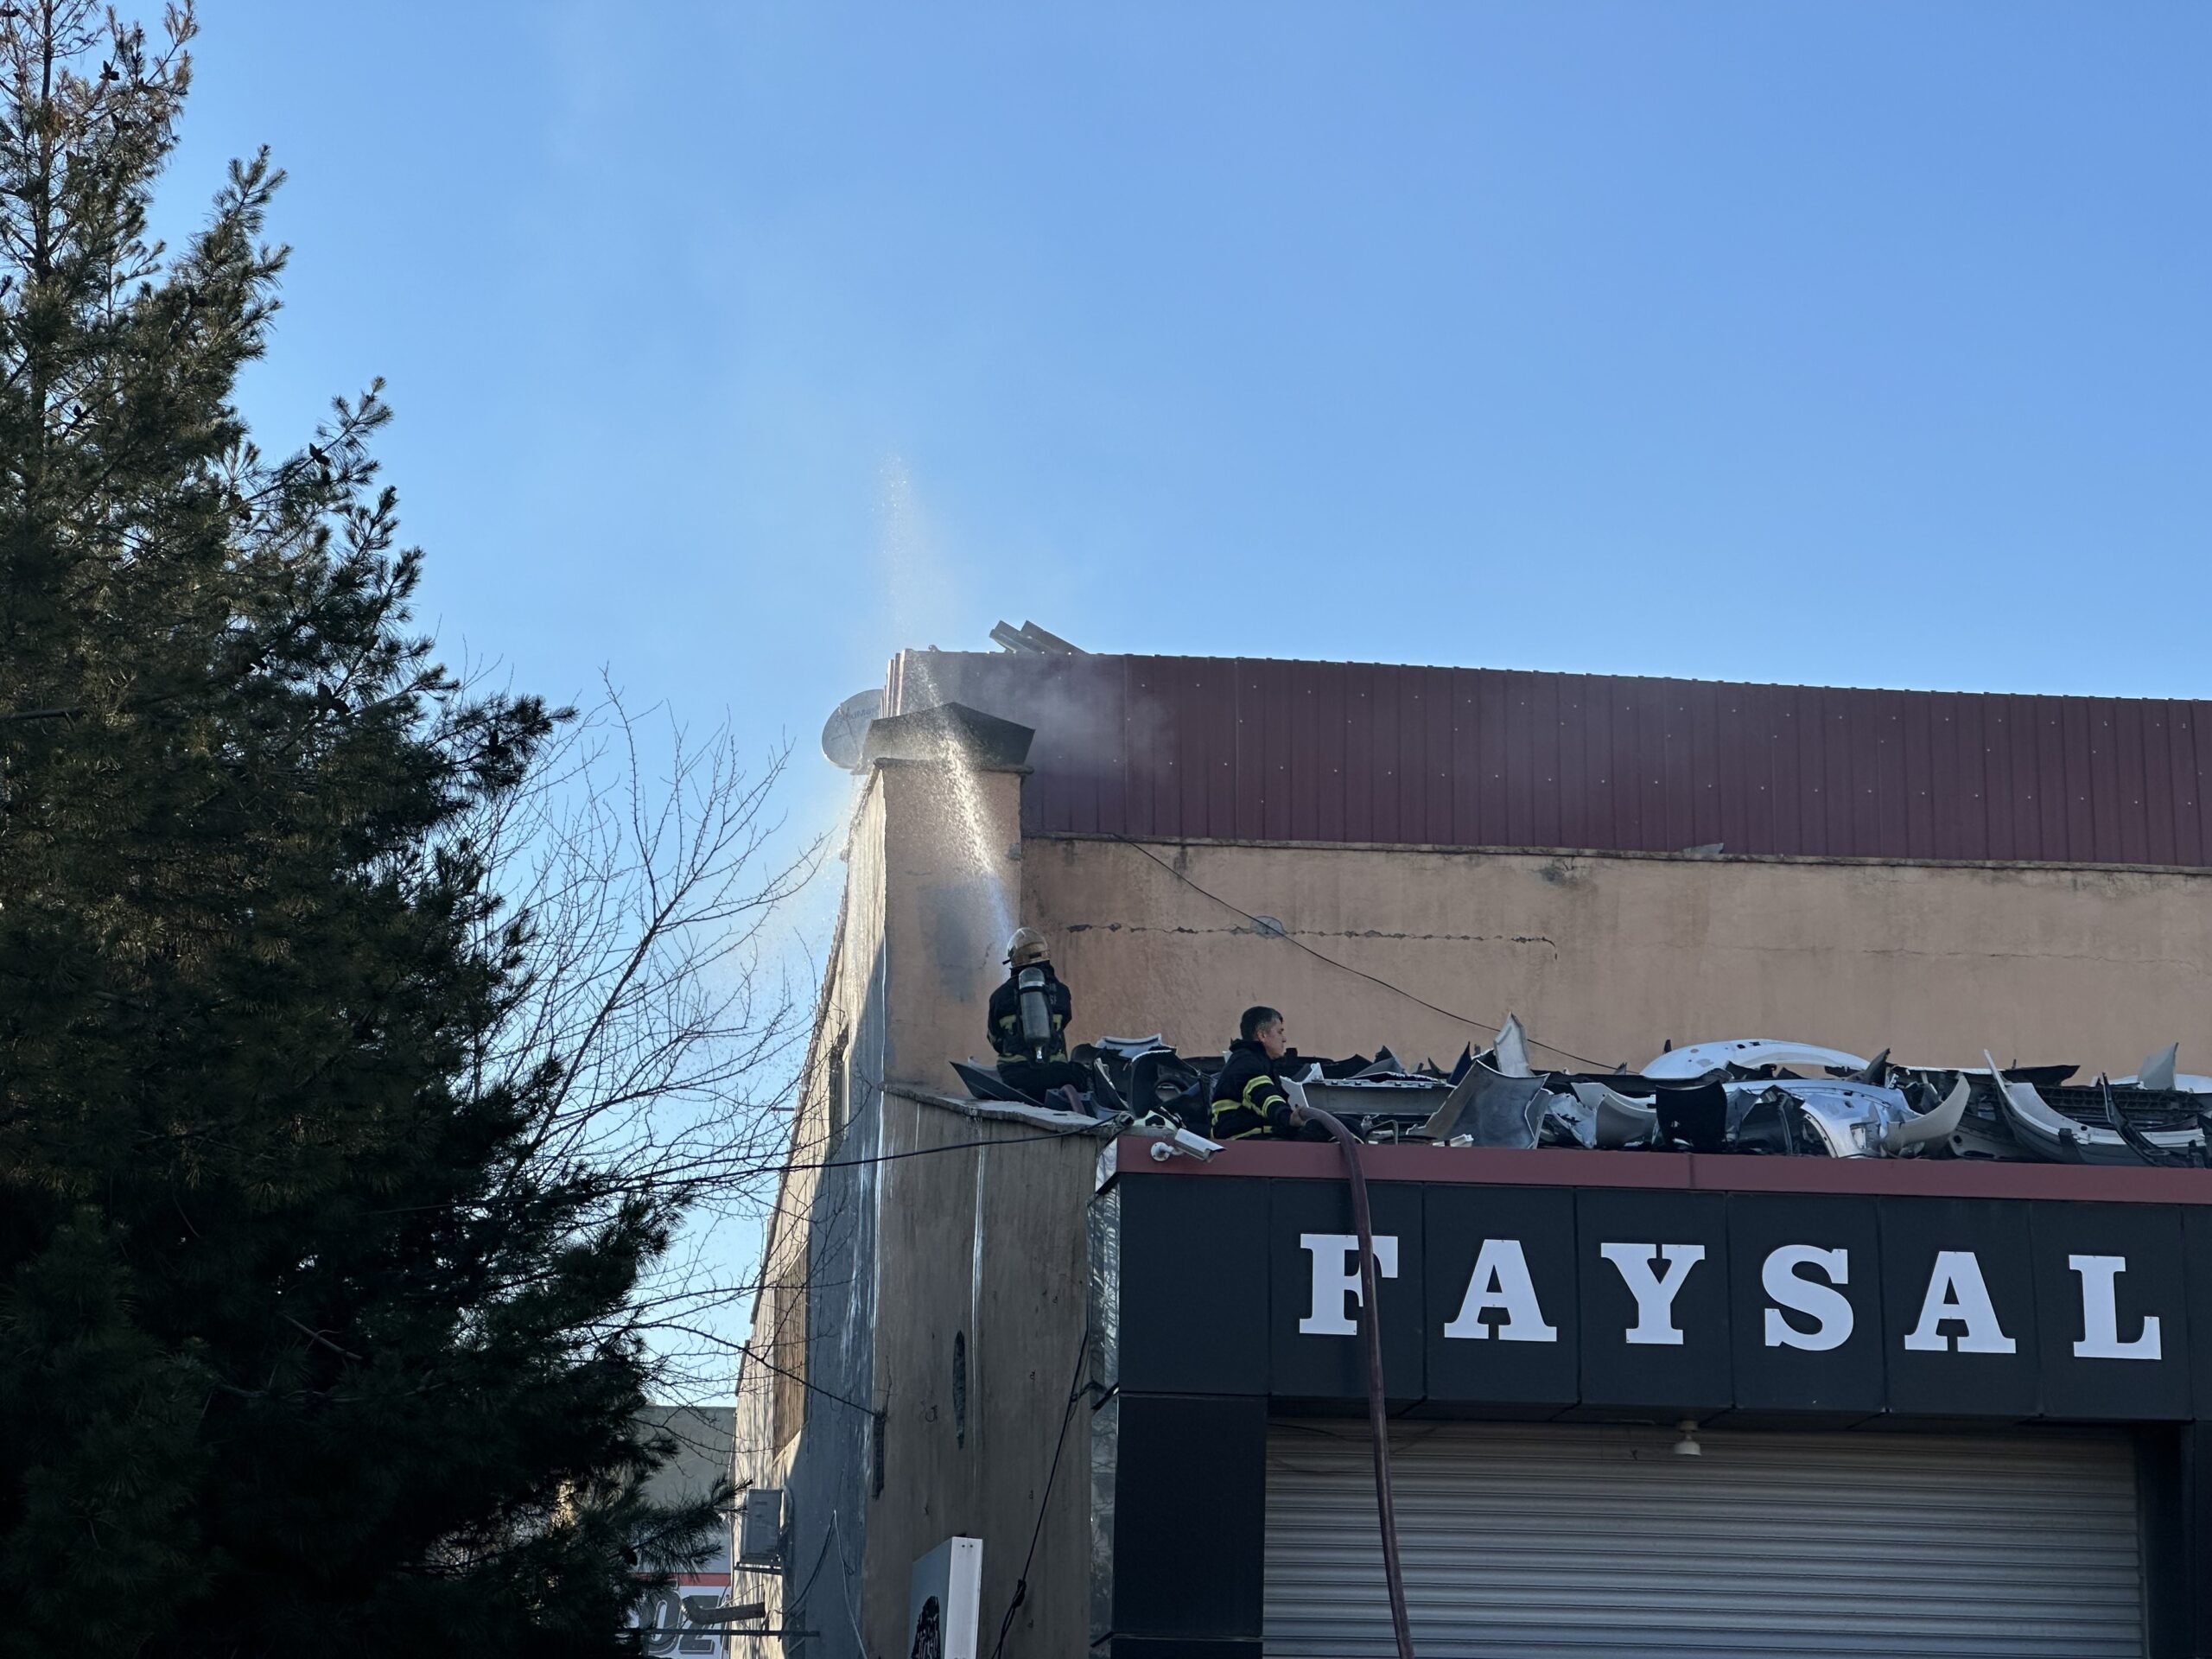  Diyarbakır’da yangın: 3 işçi dumandan etkilendi